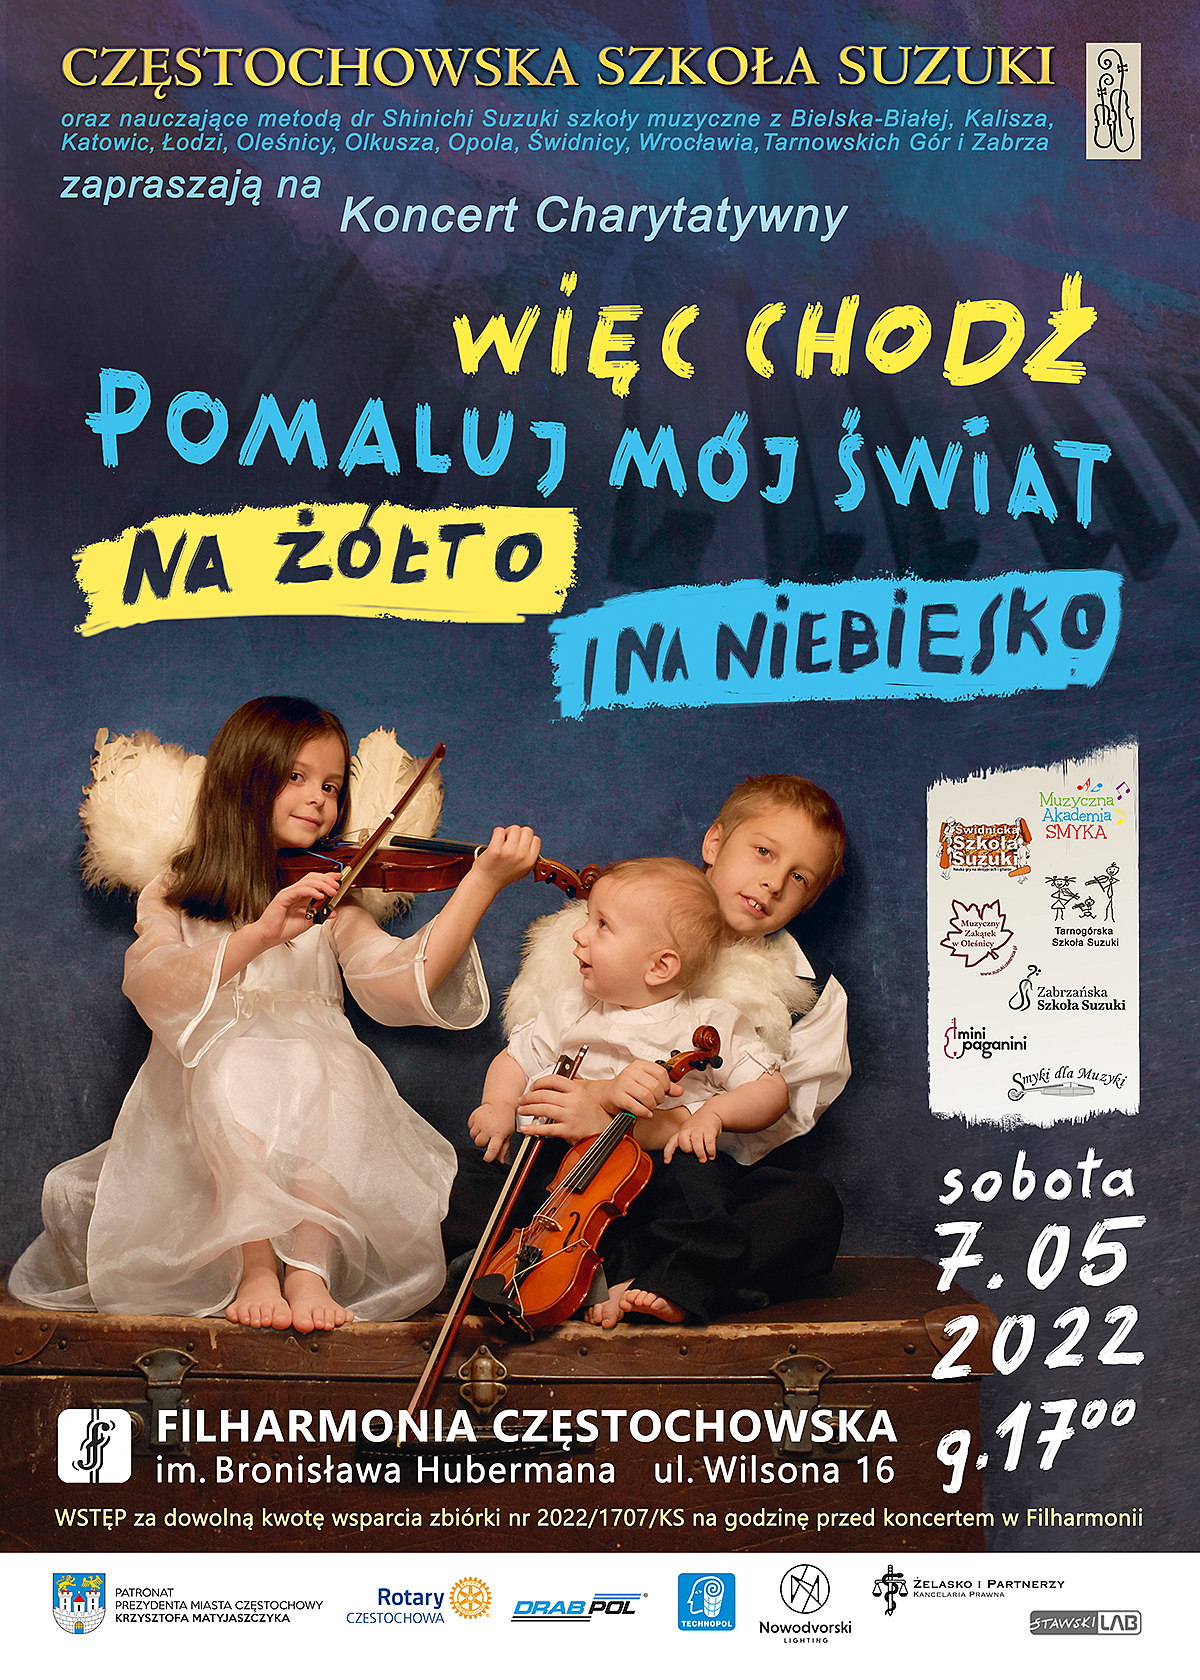 Charytatywny koncert Częstochowskiej Szkoły Suzuki. Na scenie wystąpi ponad 100 młodych artystów 1